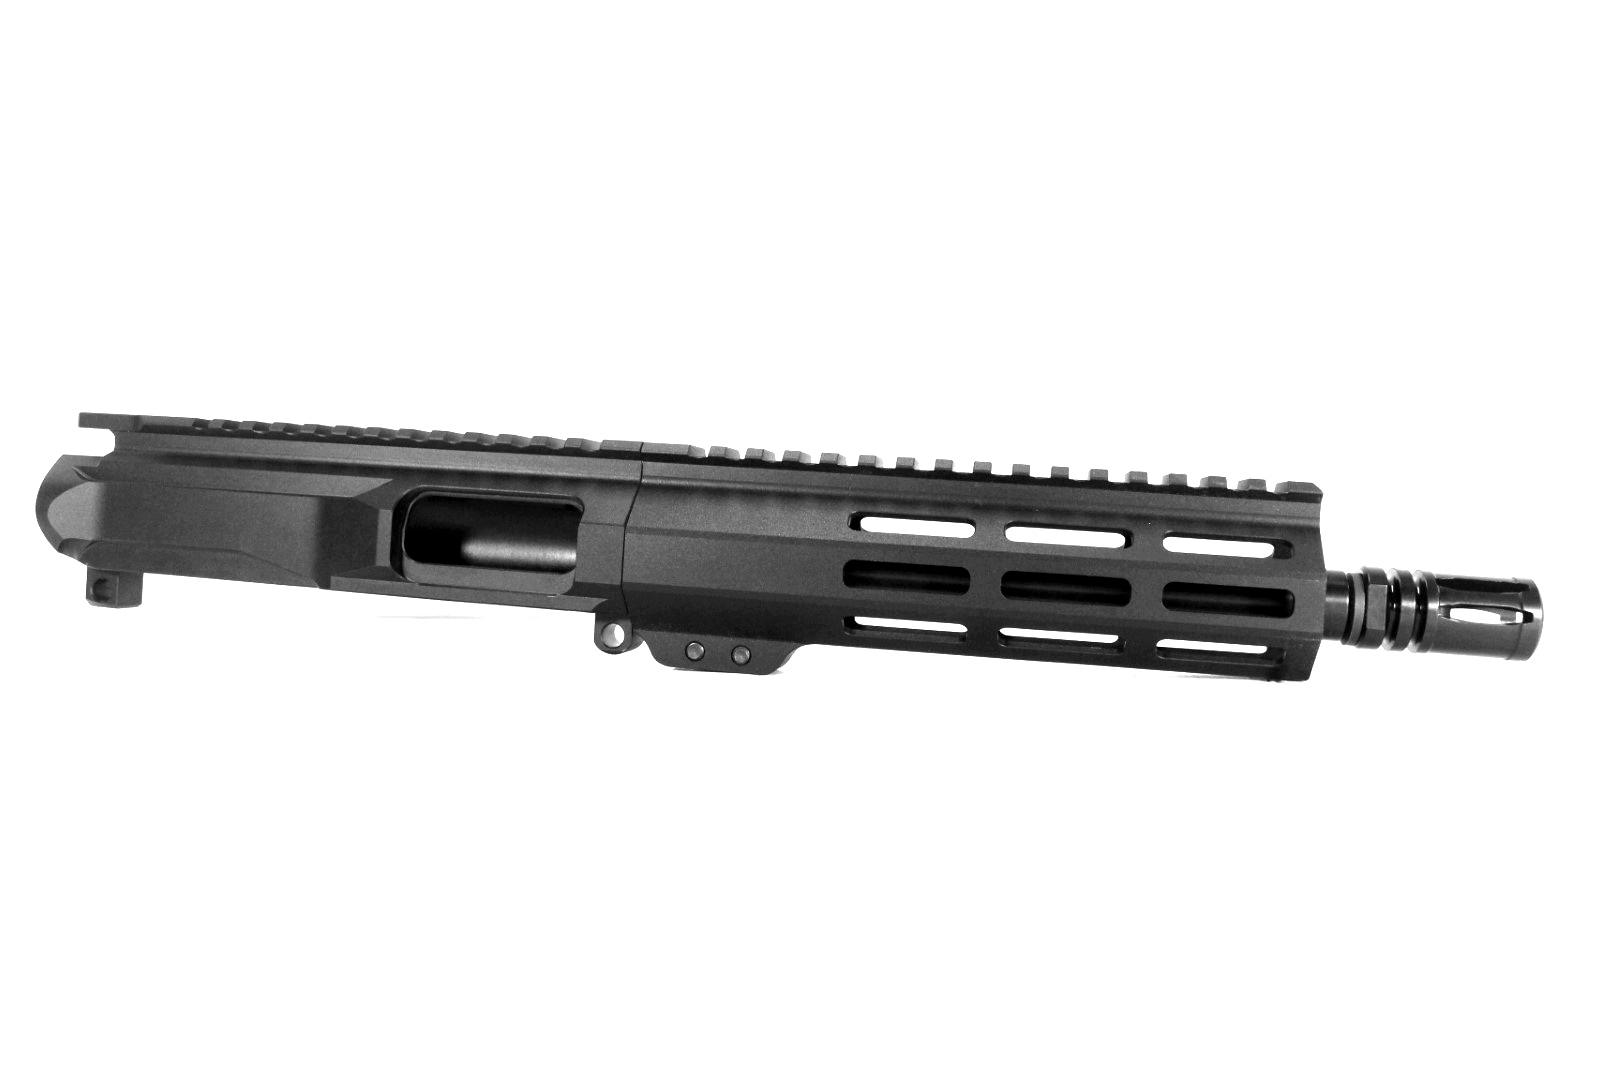 8.5 inch AR-15 45 ACP Pistol Caliber Melonite Upper | Pro2a Tactical